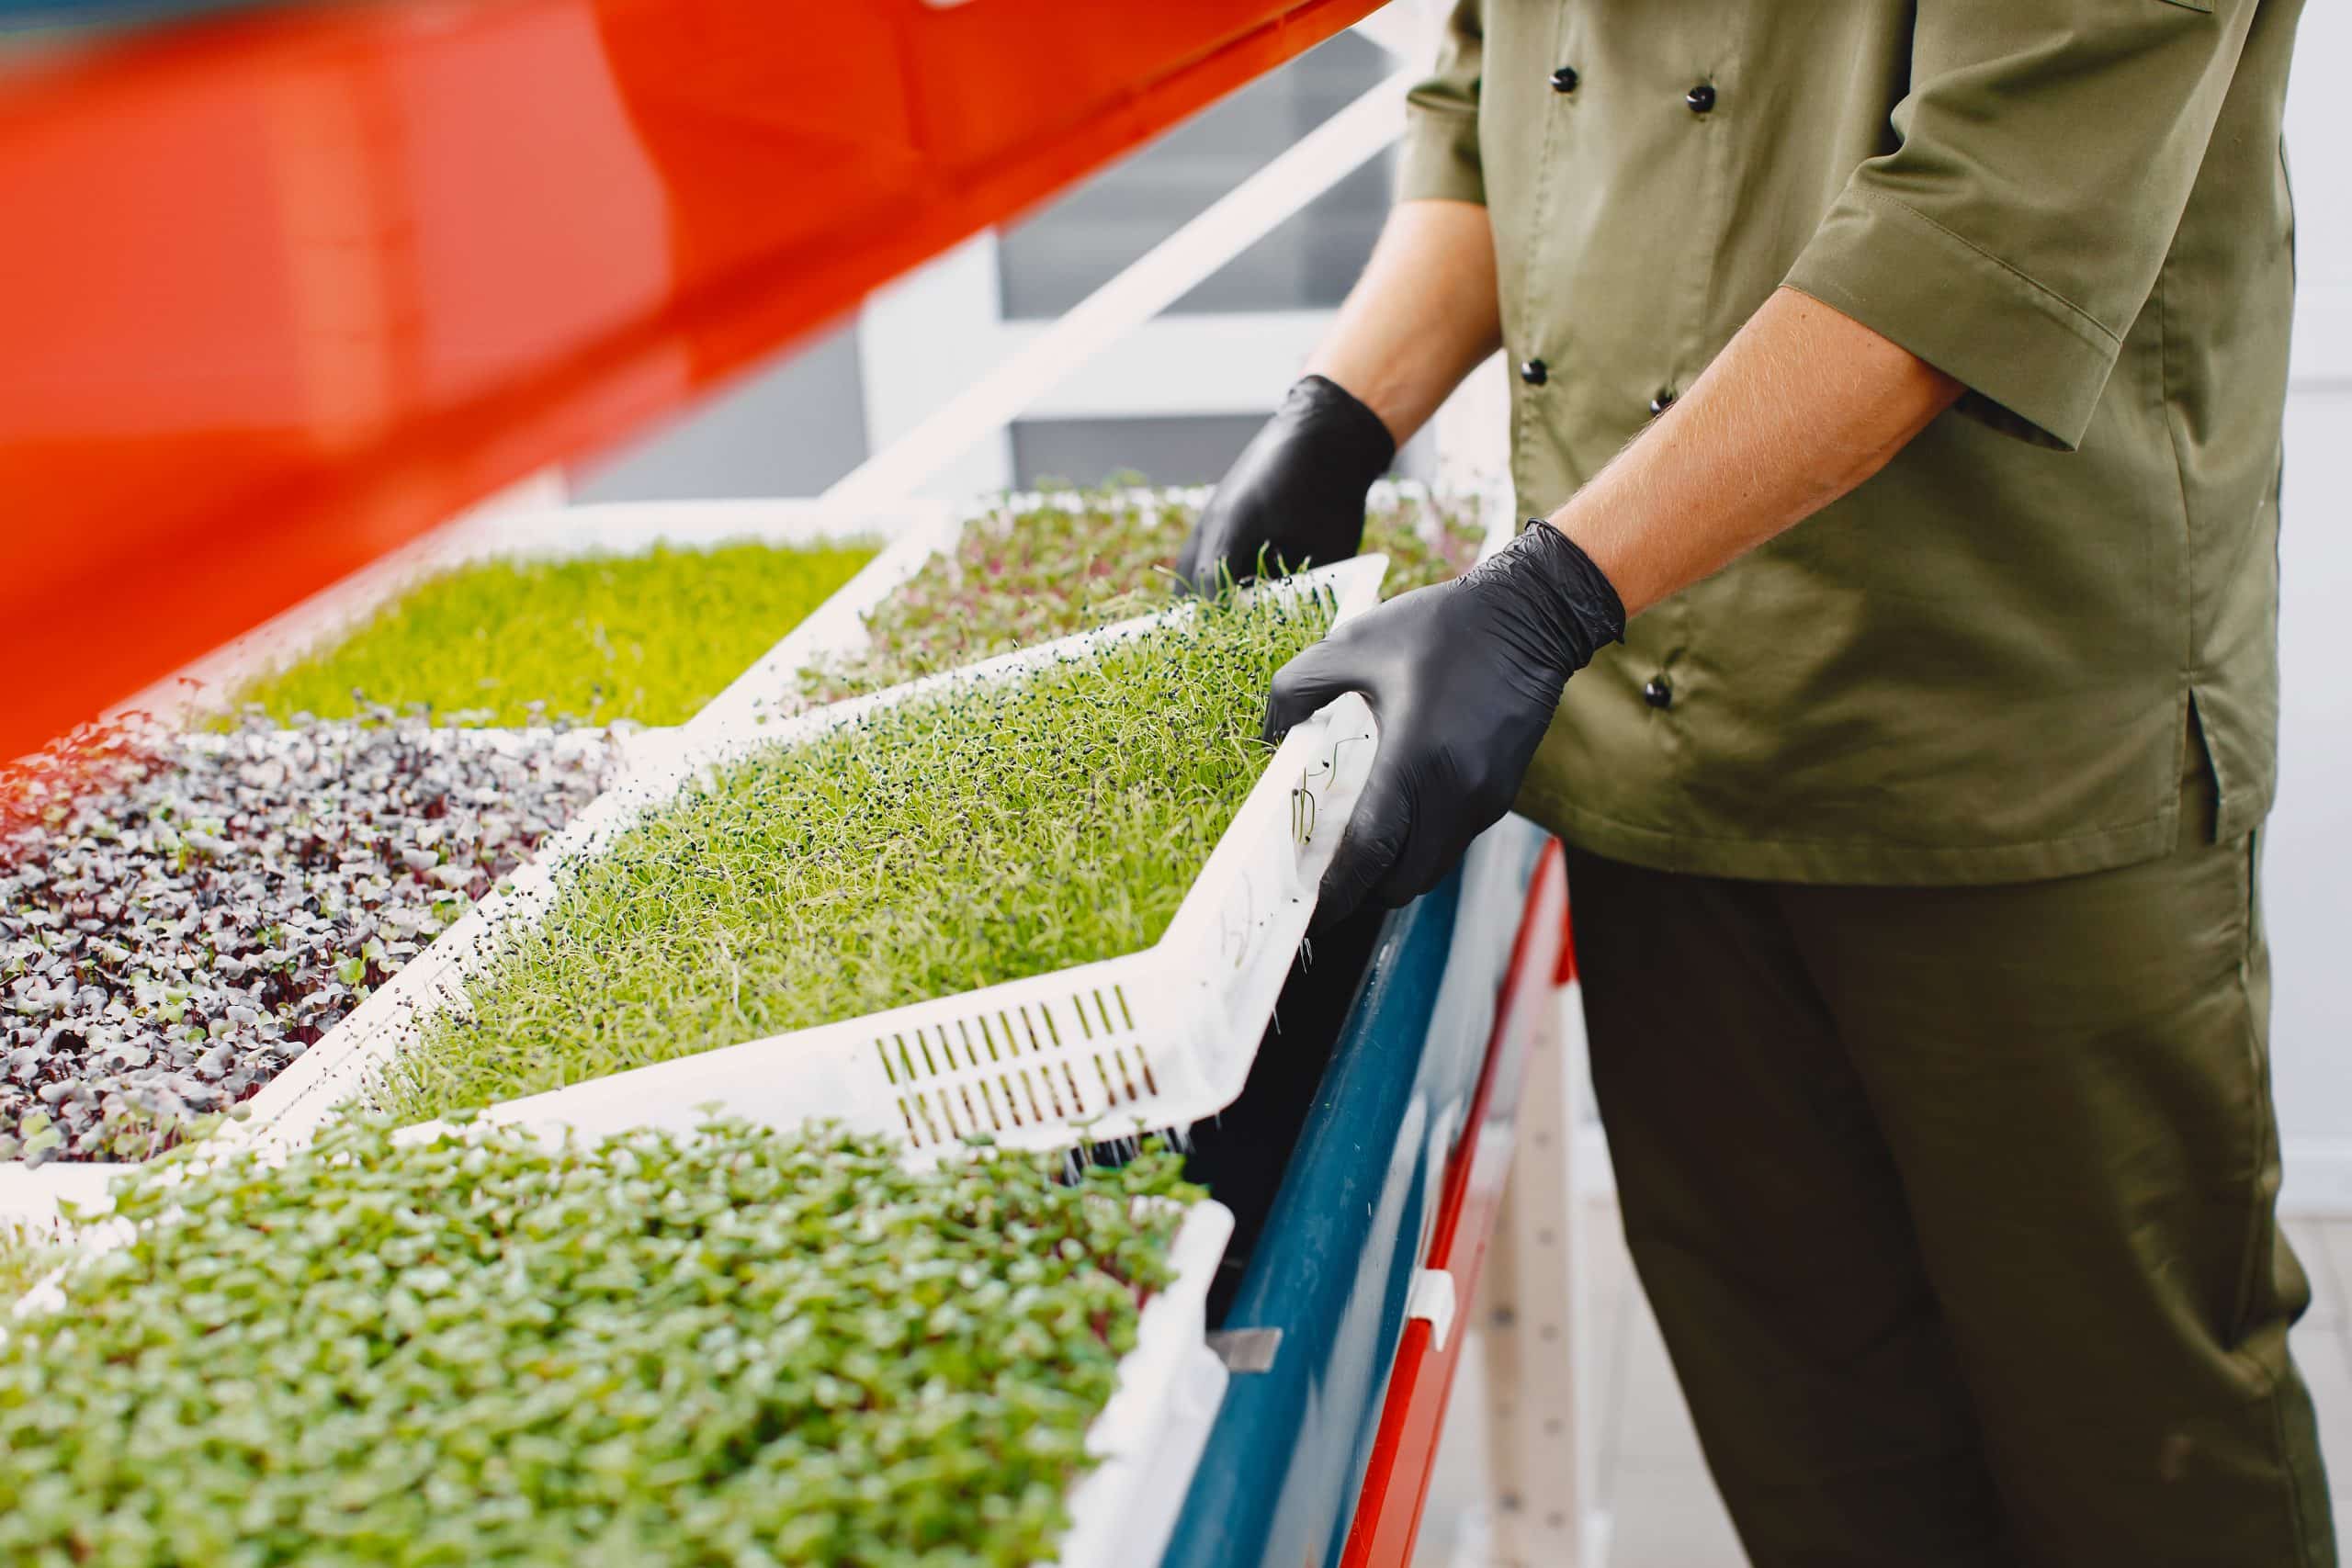 Tendencias y novedades en el sector alimentario. En la imagen vemos un plano medio: en un invernadero, un hombre con guantes sujeta una caja de brotes de cilantro.